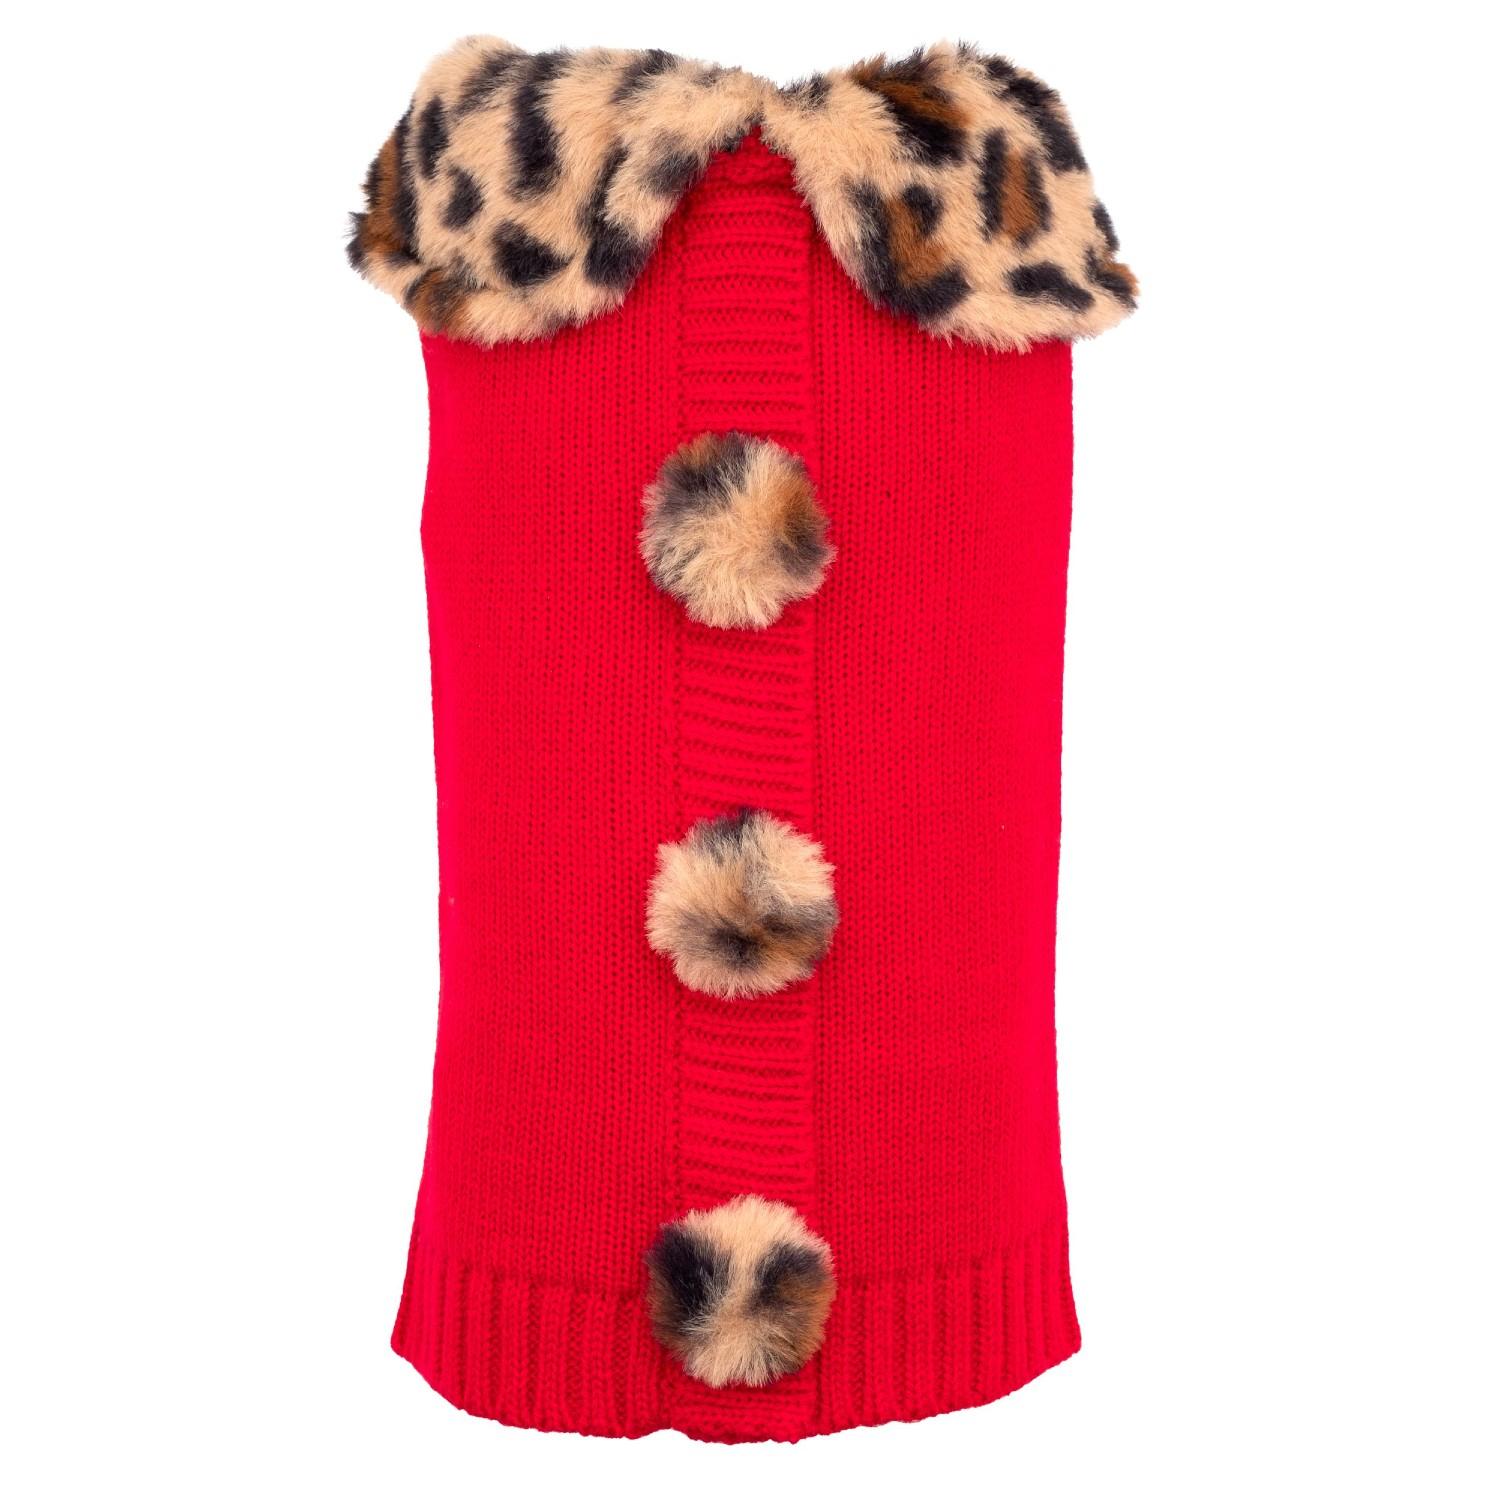 Worthy Dog Leopard Collar Cardigan Dog Sweater - Red